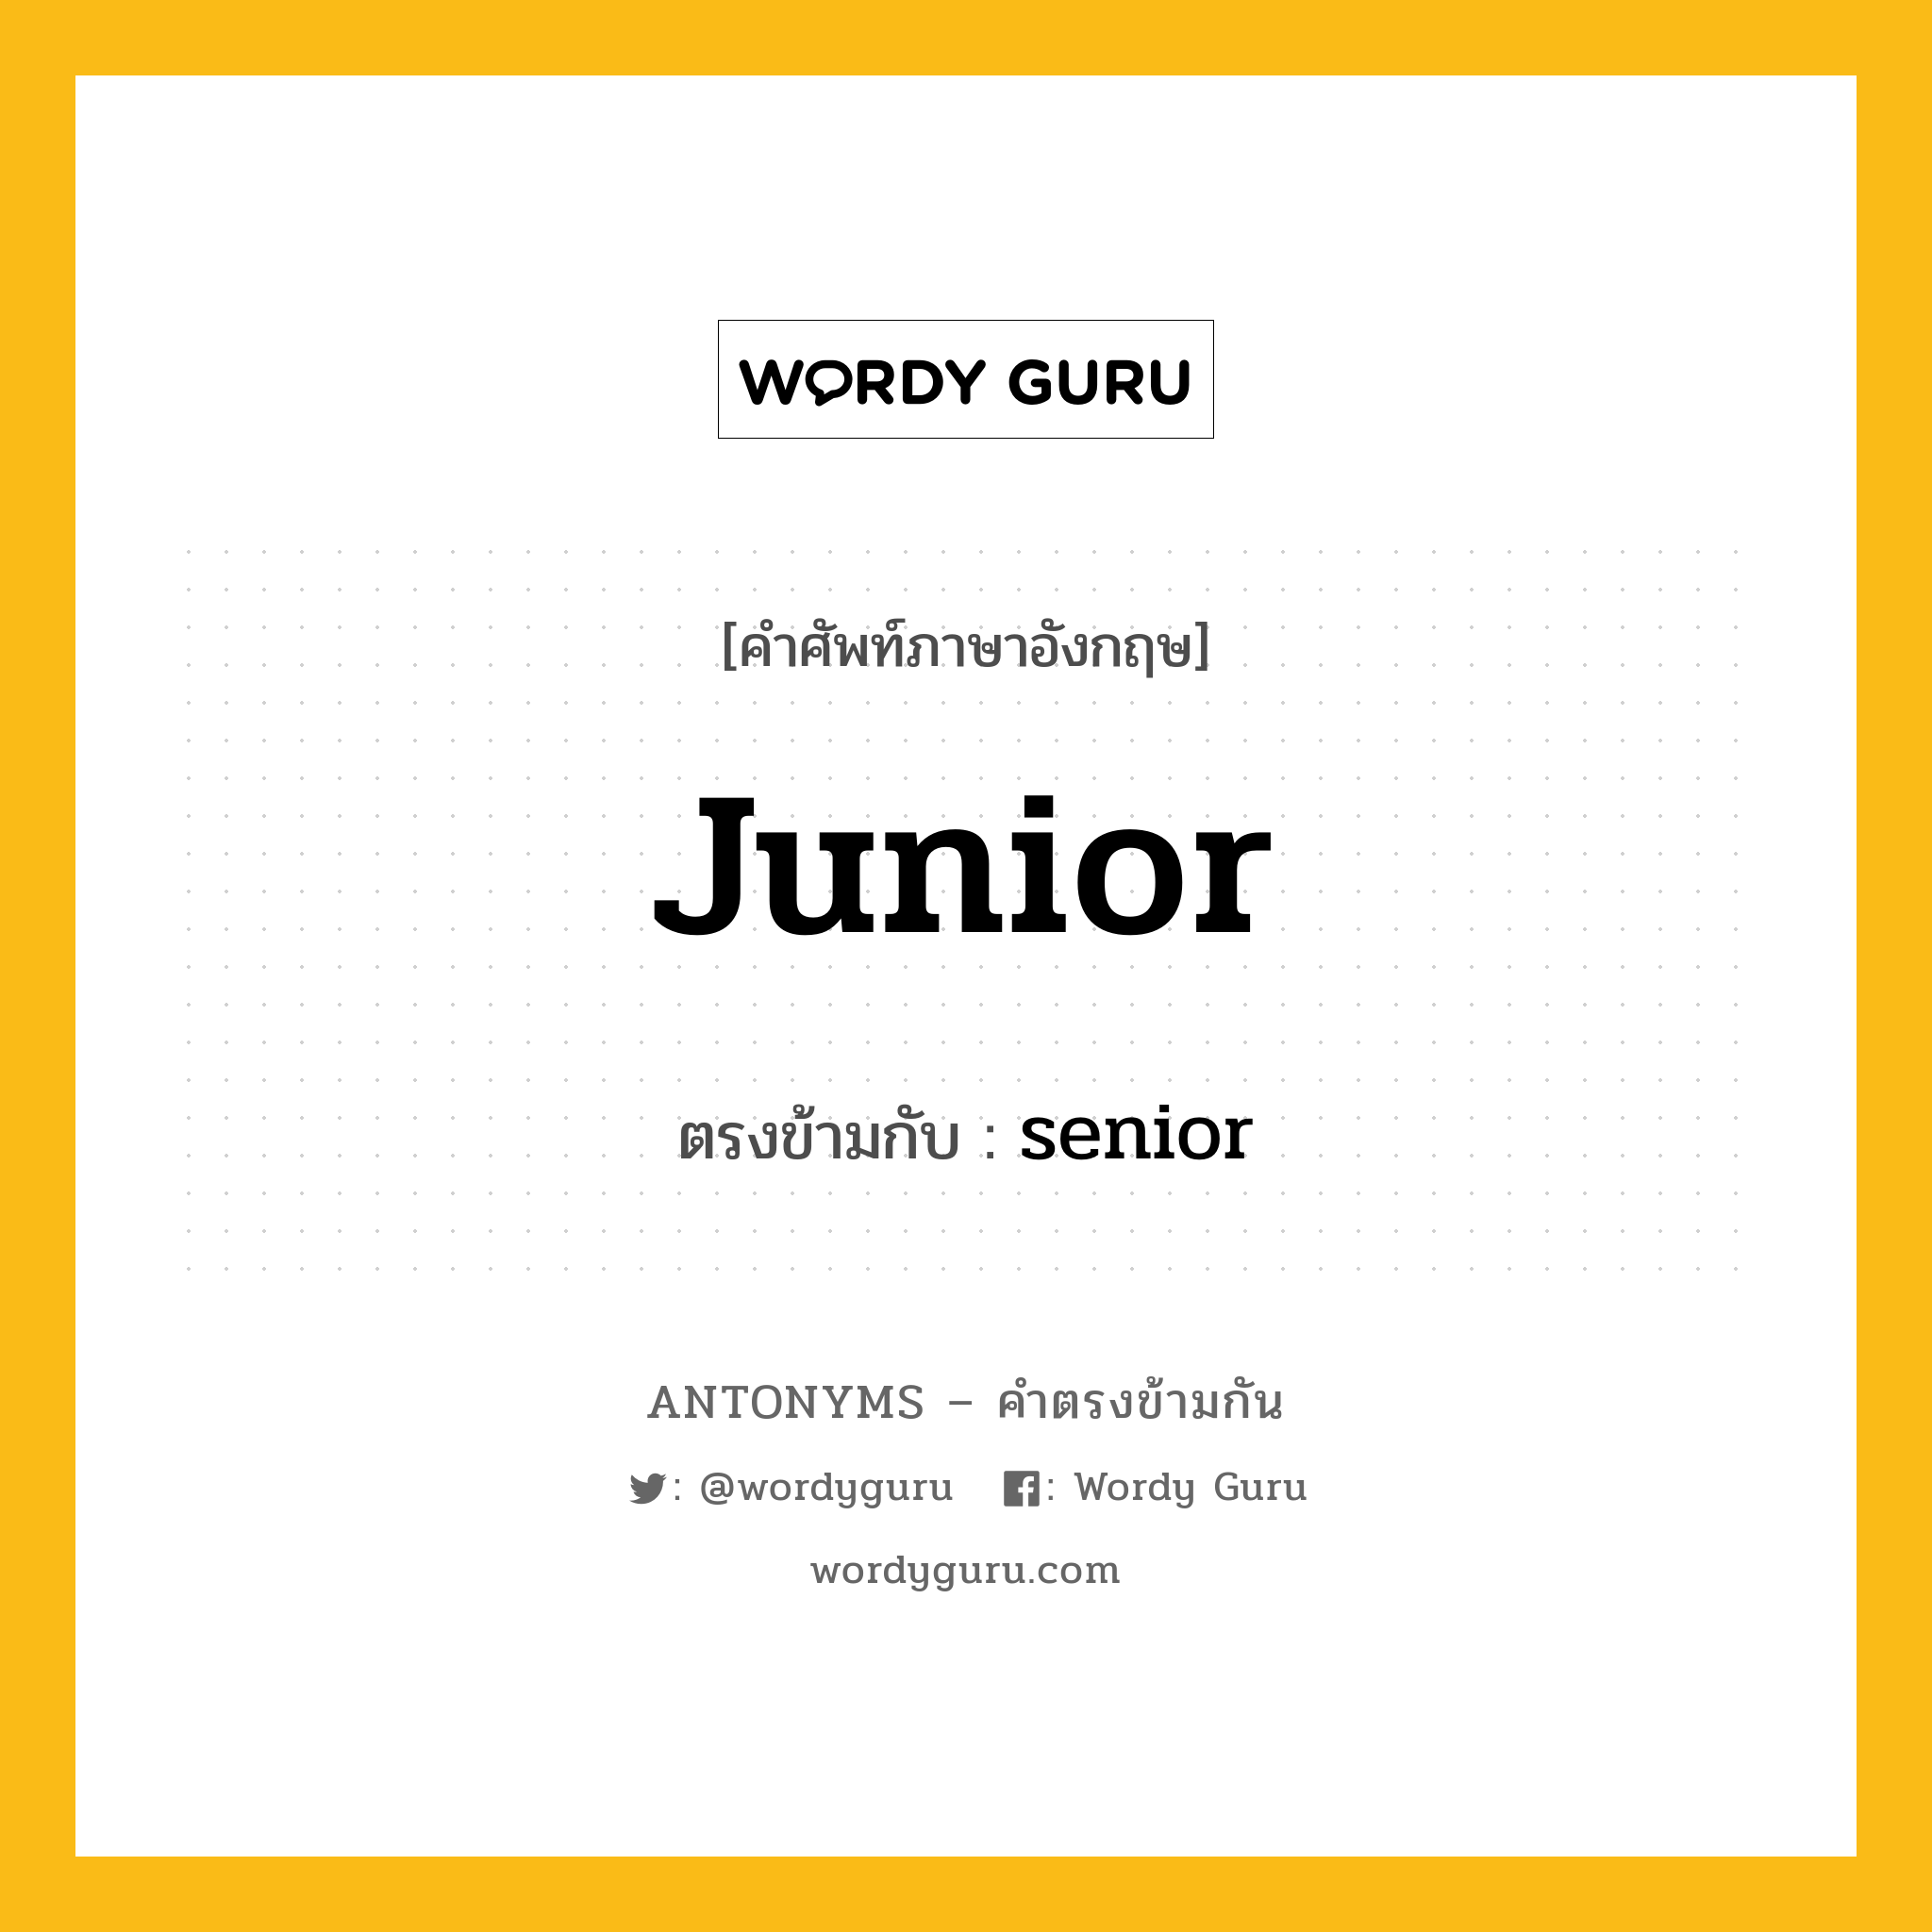 junior เป็นคำตรงข้ามกับคำไหนบ้าง?, คำศัพท์ภาษาอังกฤษ junior ตรงข้ามกับ senior หมวด senior